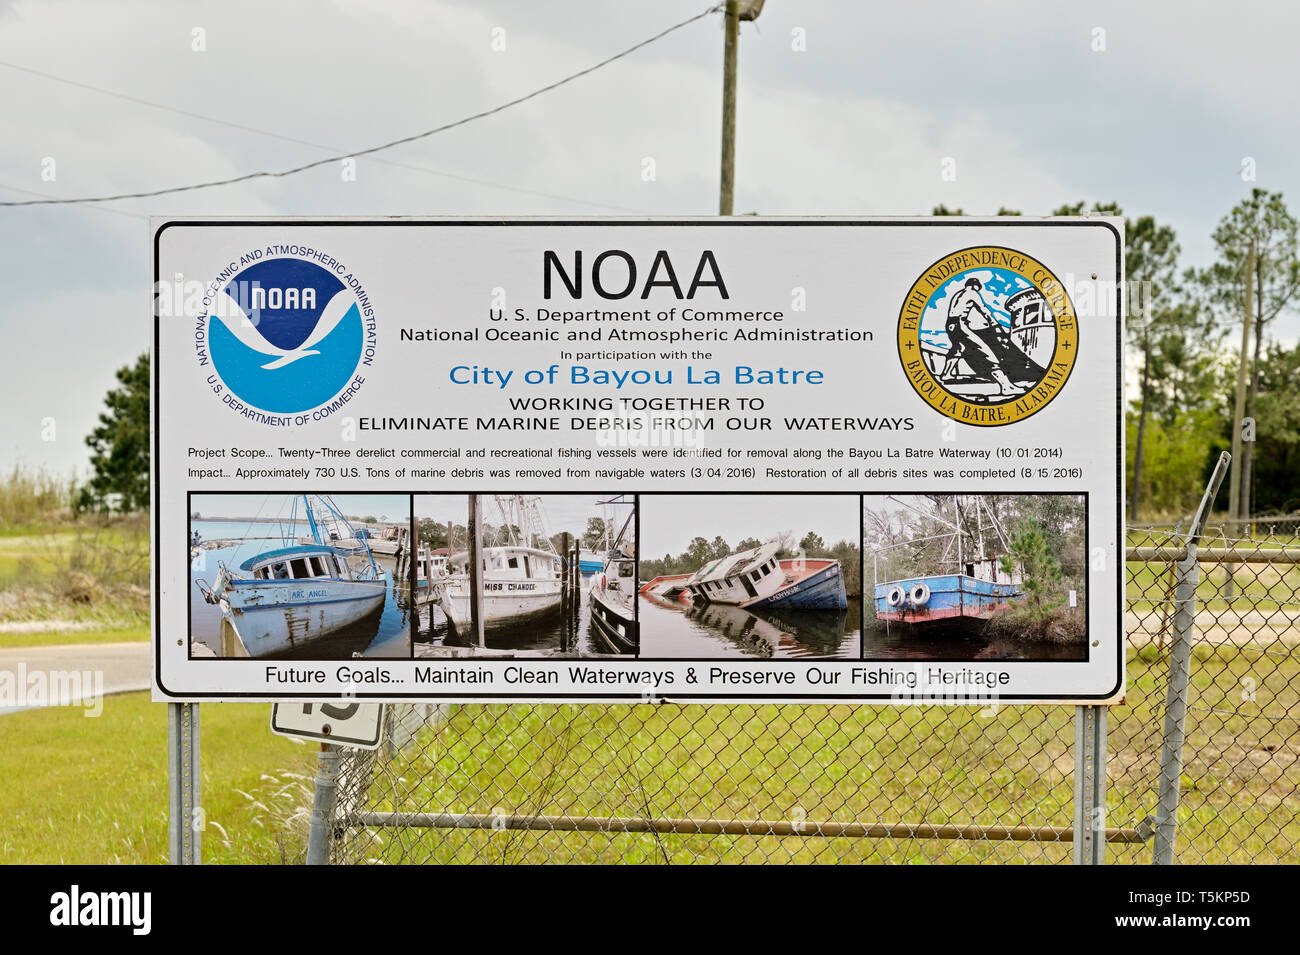 NOAA-Zeichen Beratung Erhaltung sauberen Gewässer zu erhalten und marine Ablagerungen aus dem Bayou und Mobile Bay halten, in Bayou La Batre Alabama, USA. Stockfoto